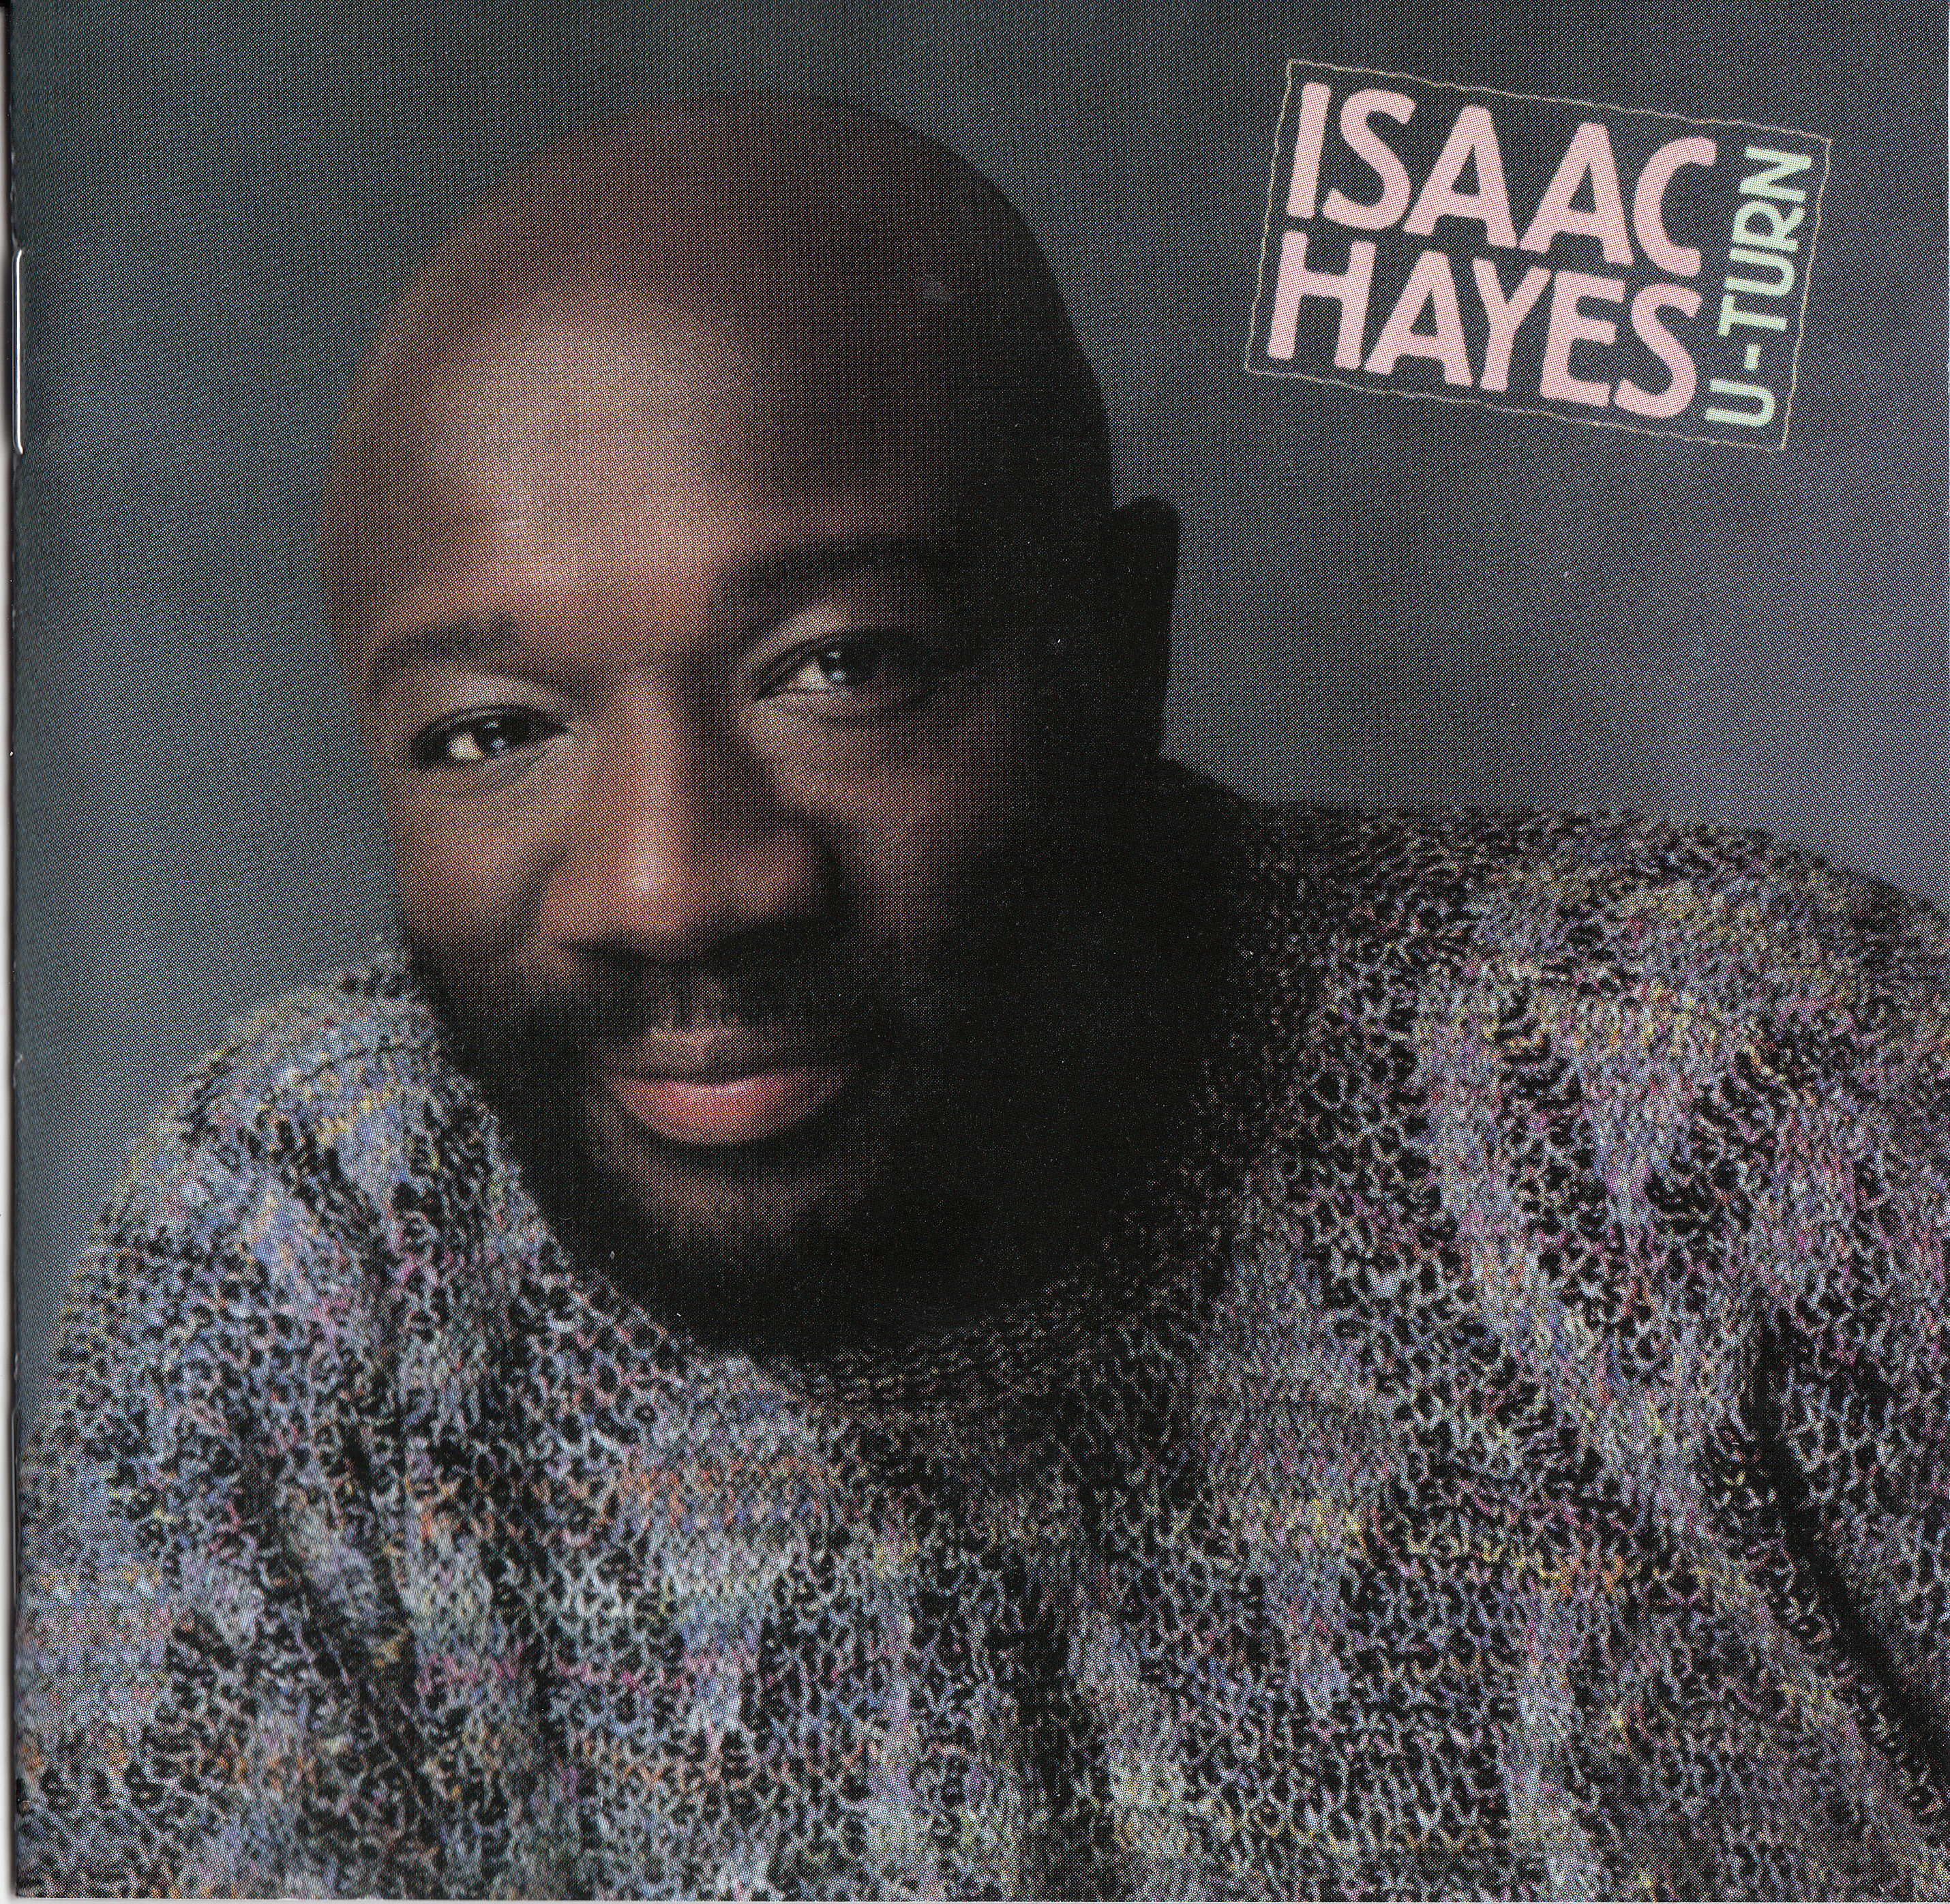 Isaac Hayes - U-Turn - gebrauchte Kassette - J7685z - Bild 1 von 1